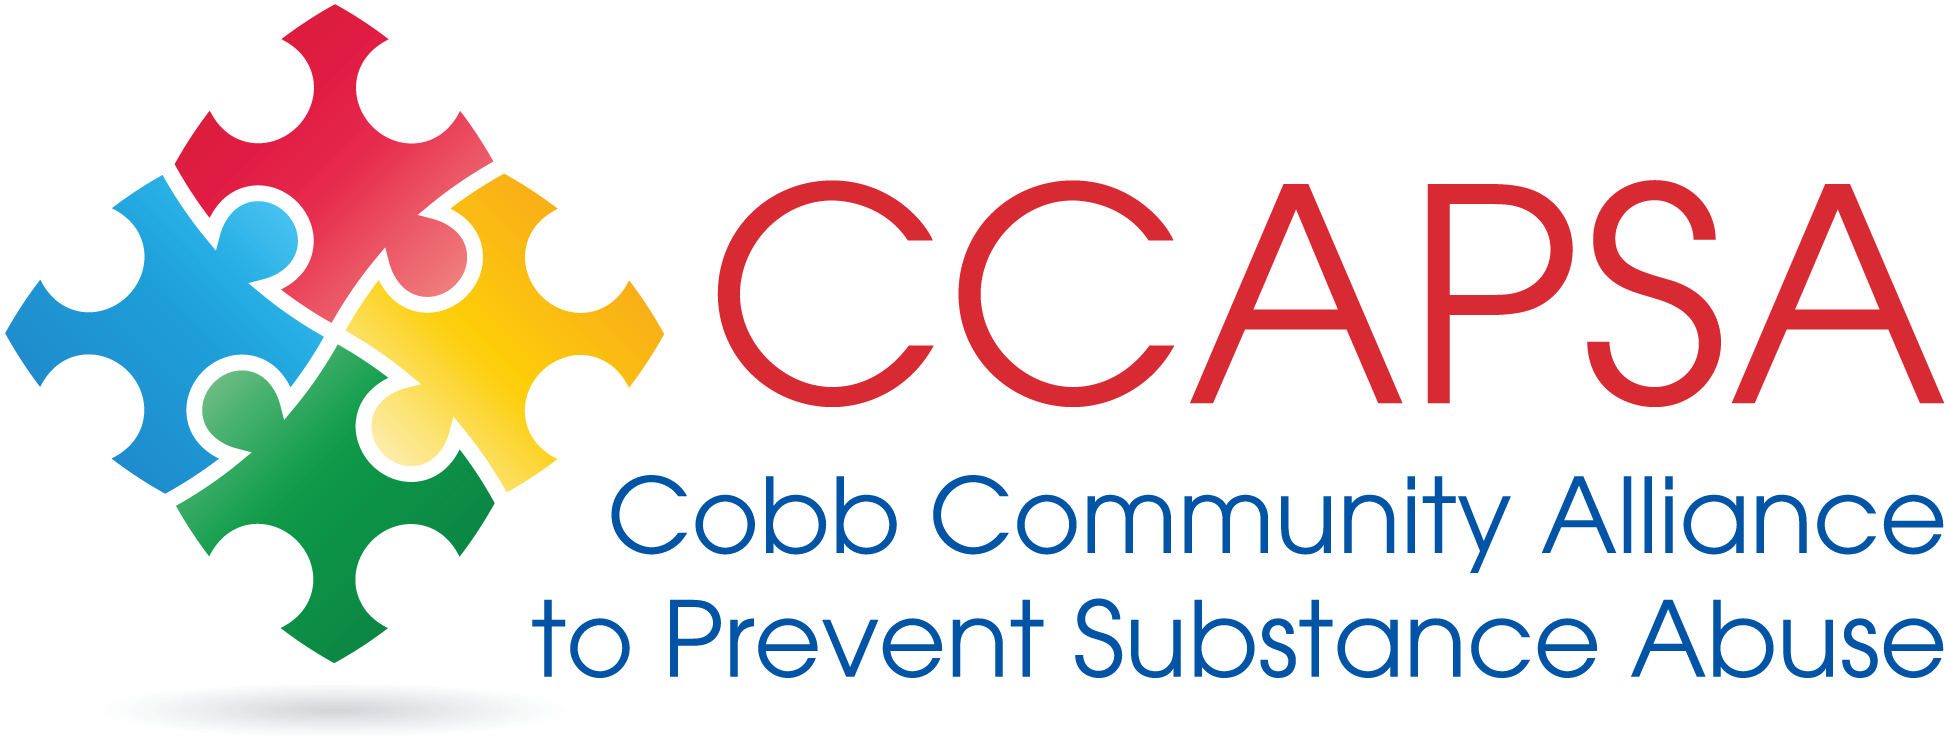 CCAPSA-logo